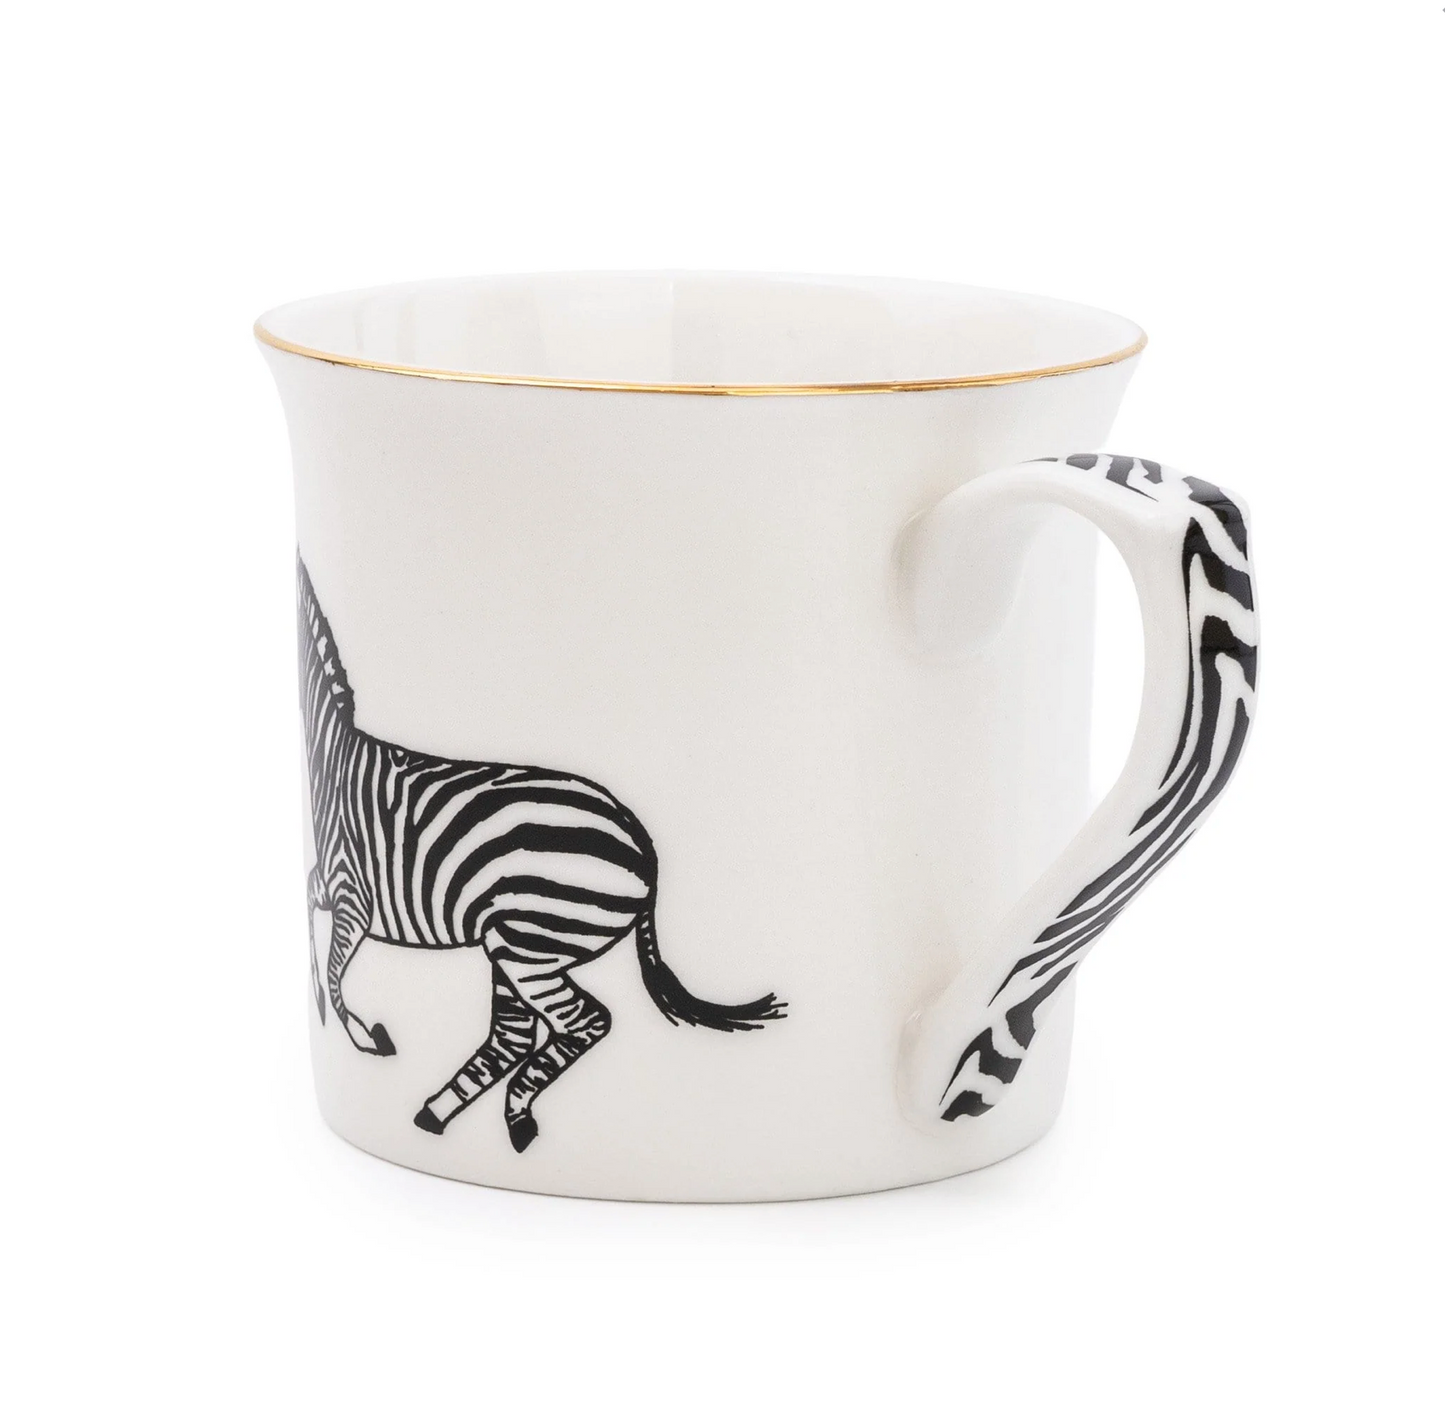 Fine Bone China Monochrome Mug, Zebra